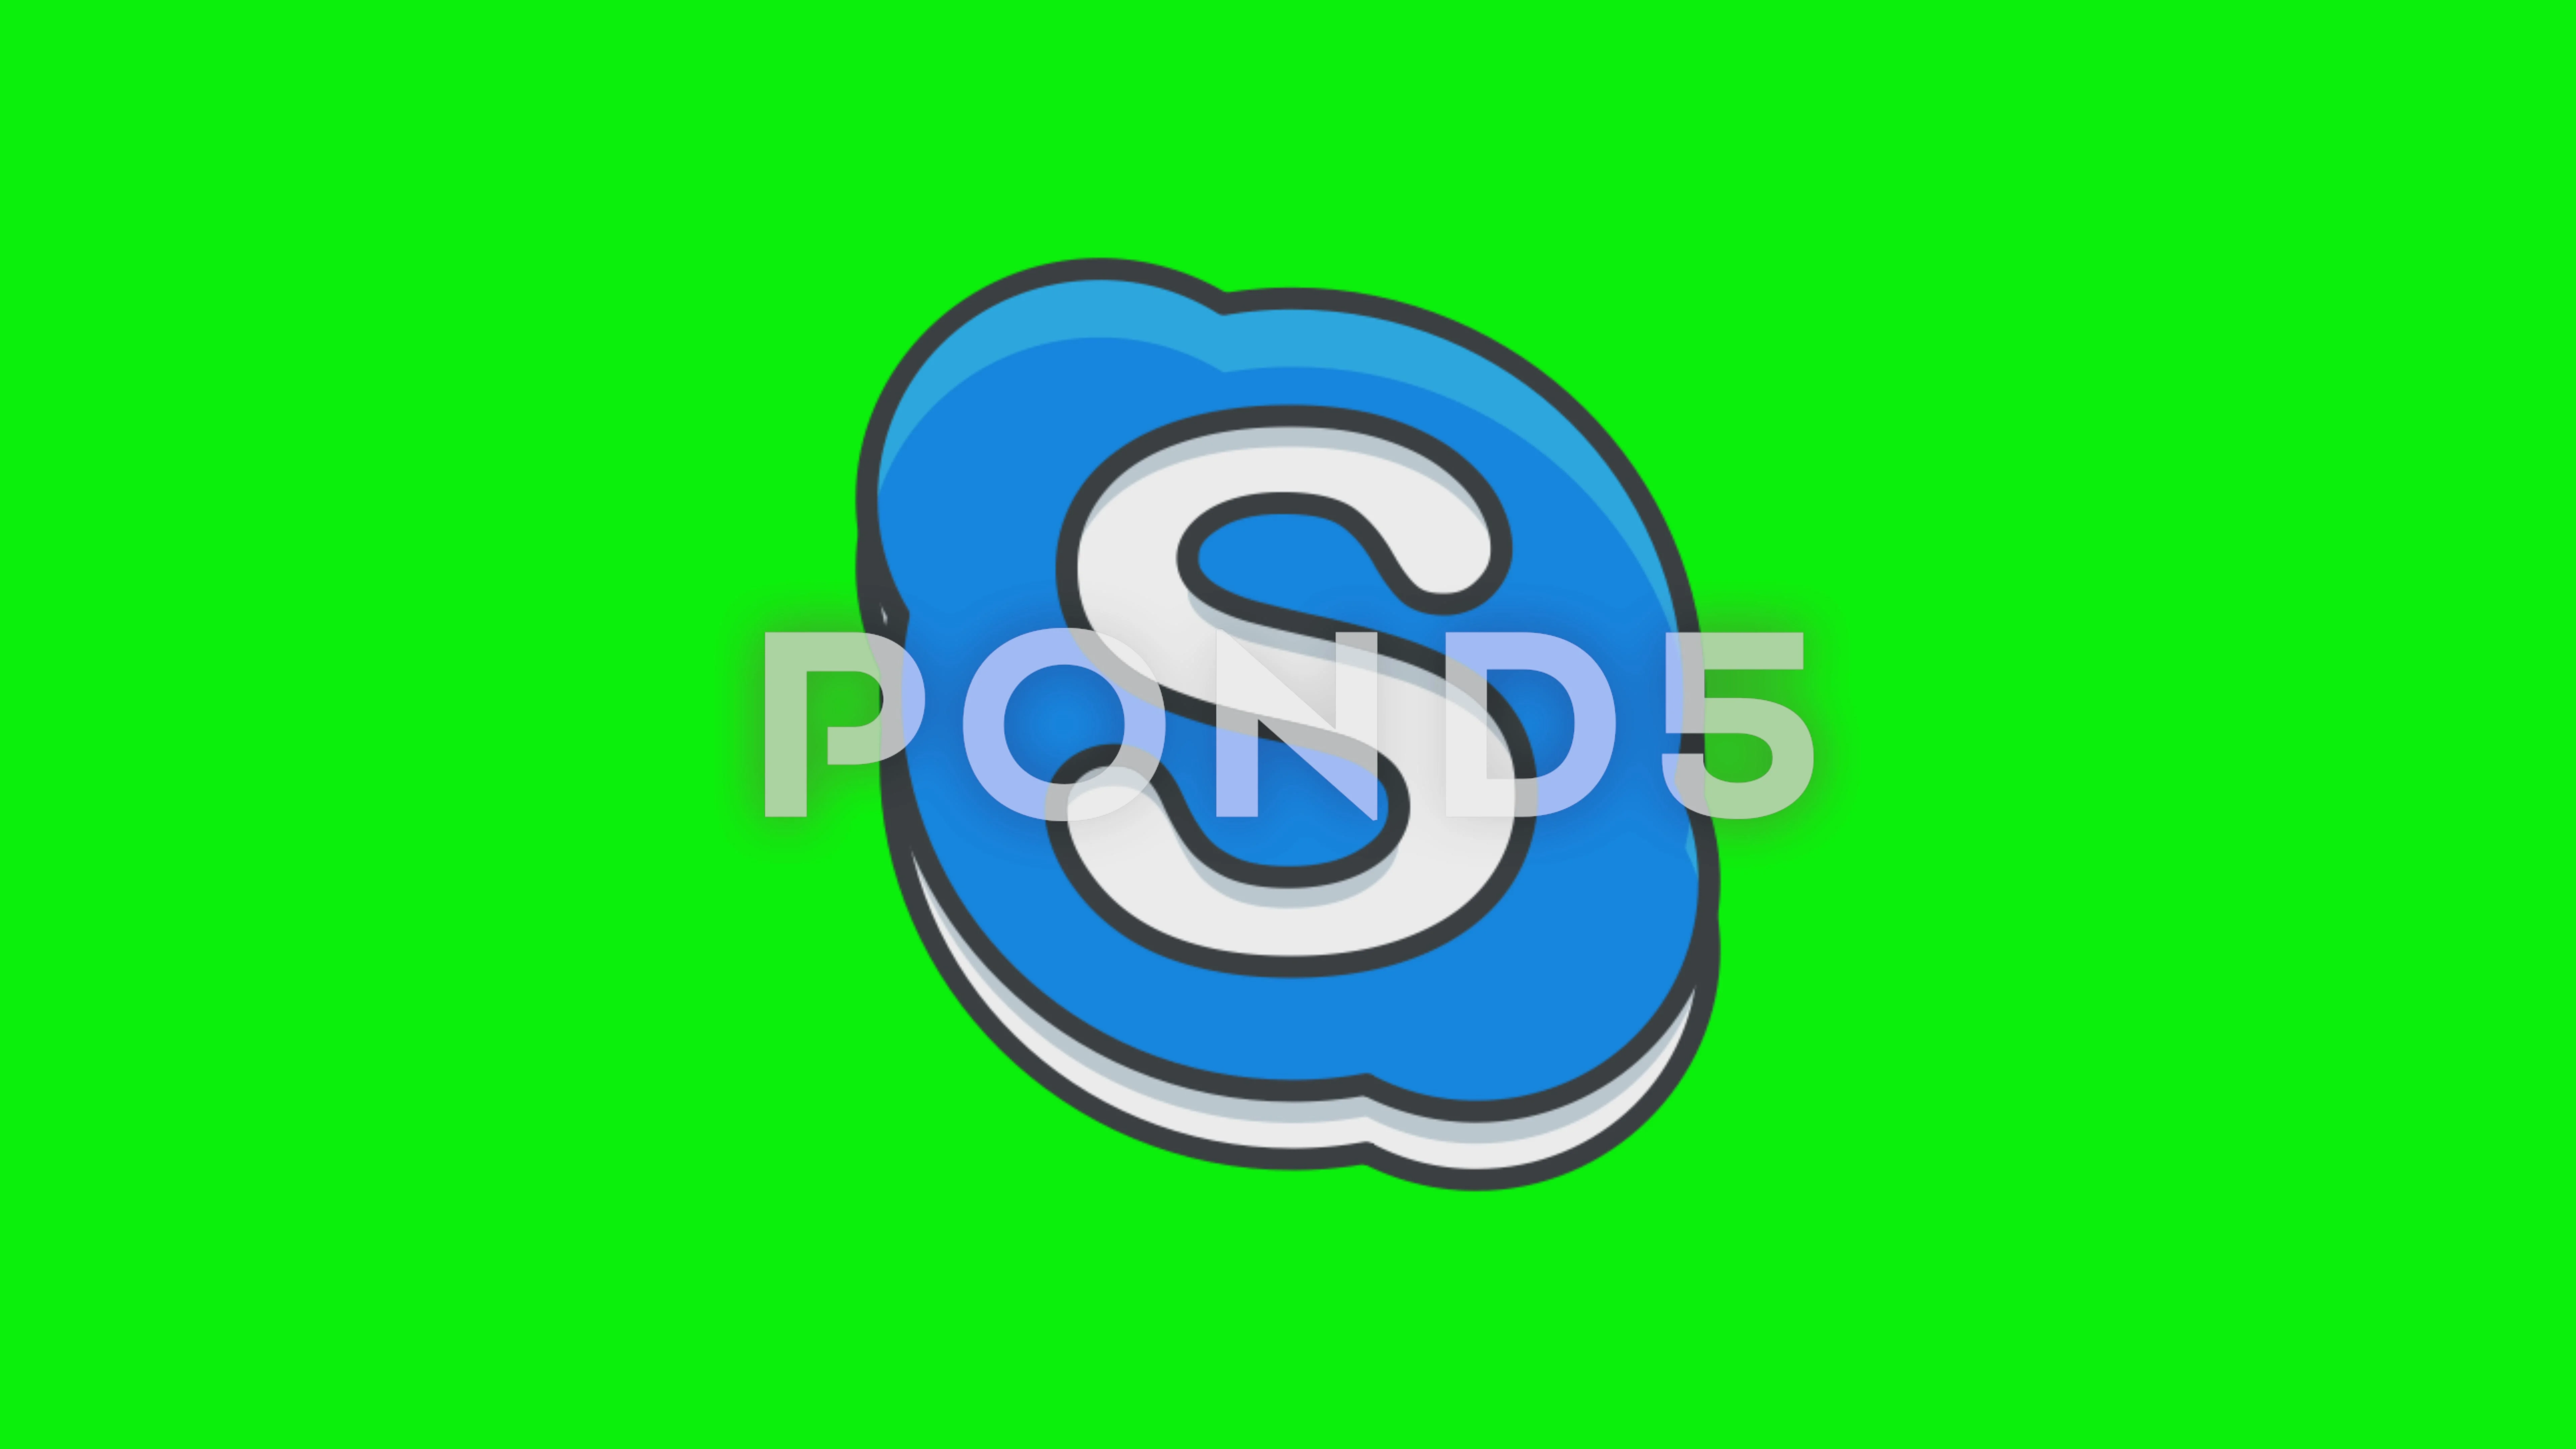 skype logo green